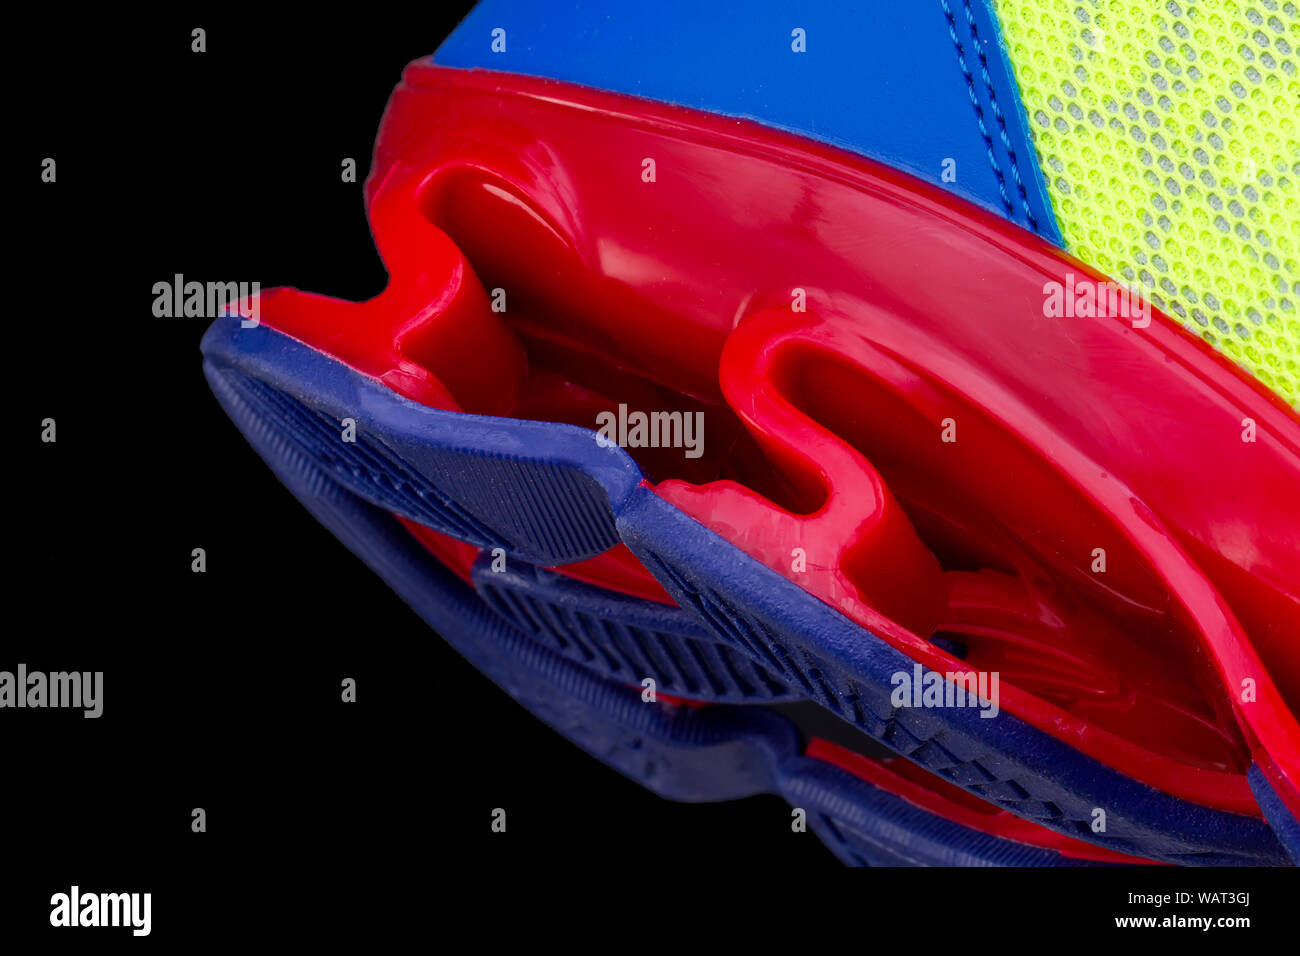 Frammento di La red sneaker suola. La consistenza del materiale di calzature sportive Foto Stock